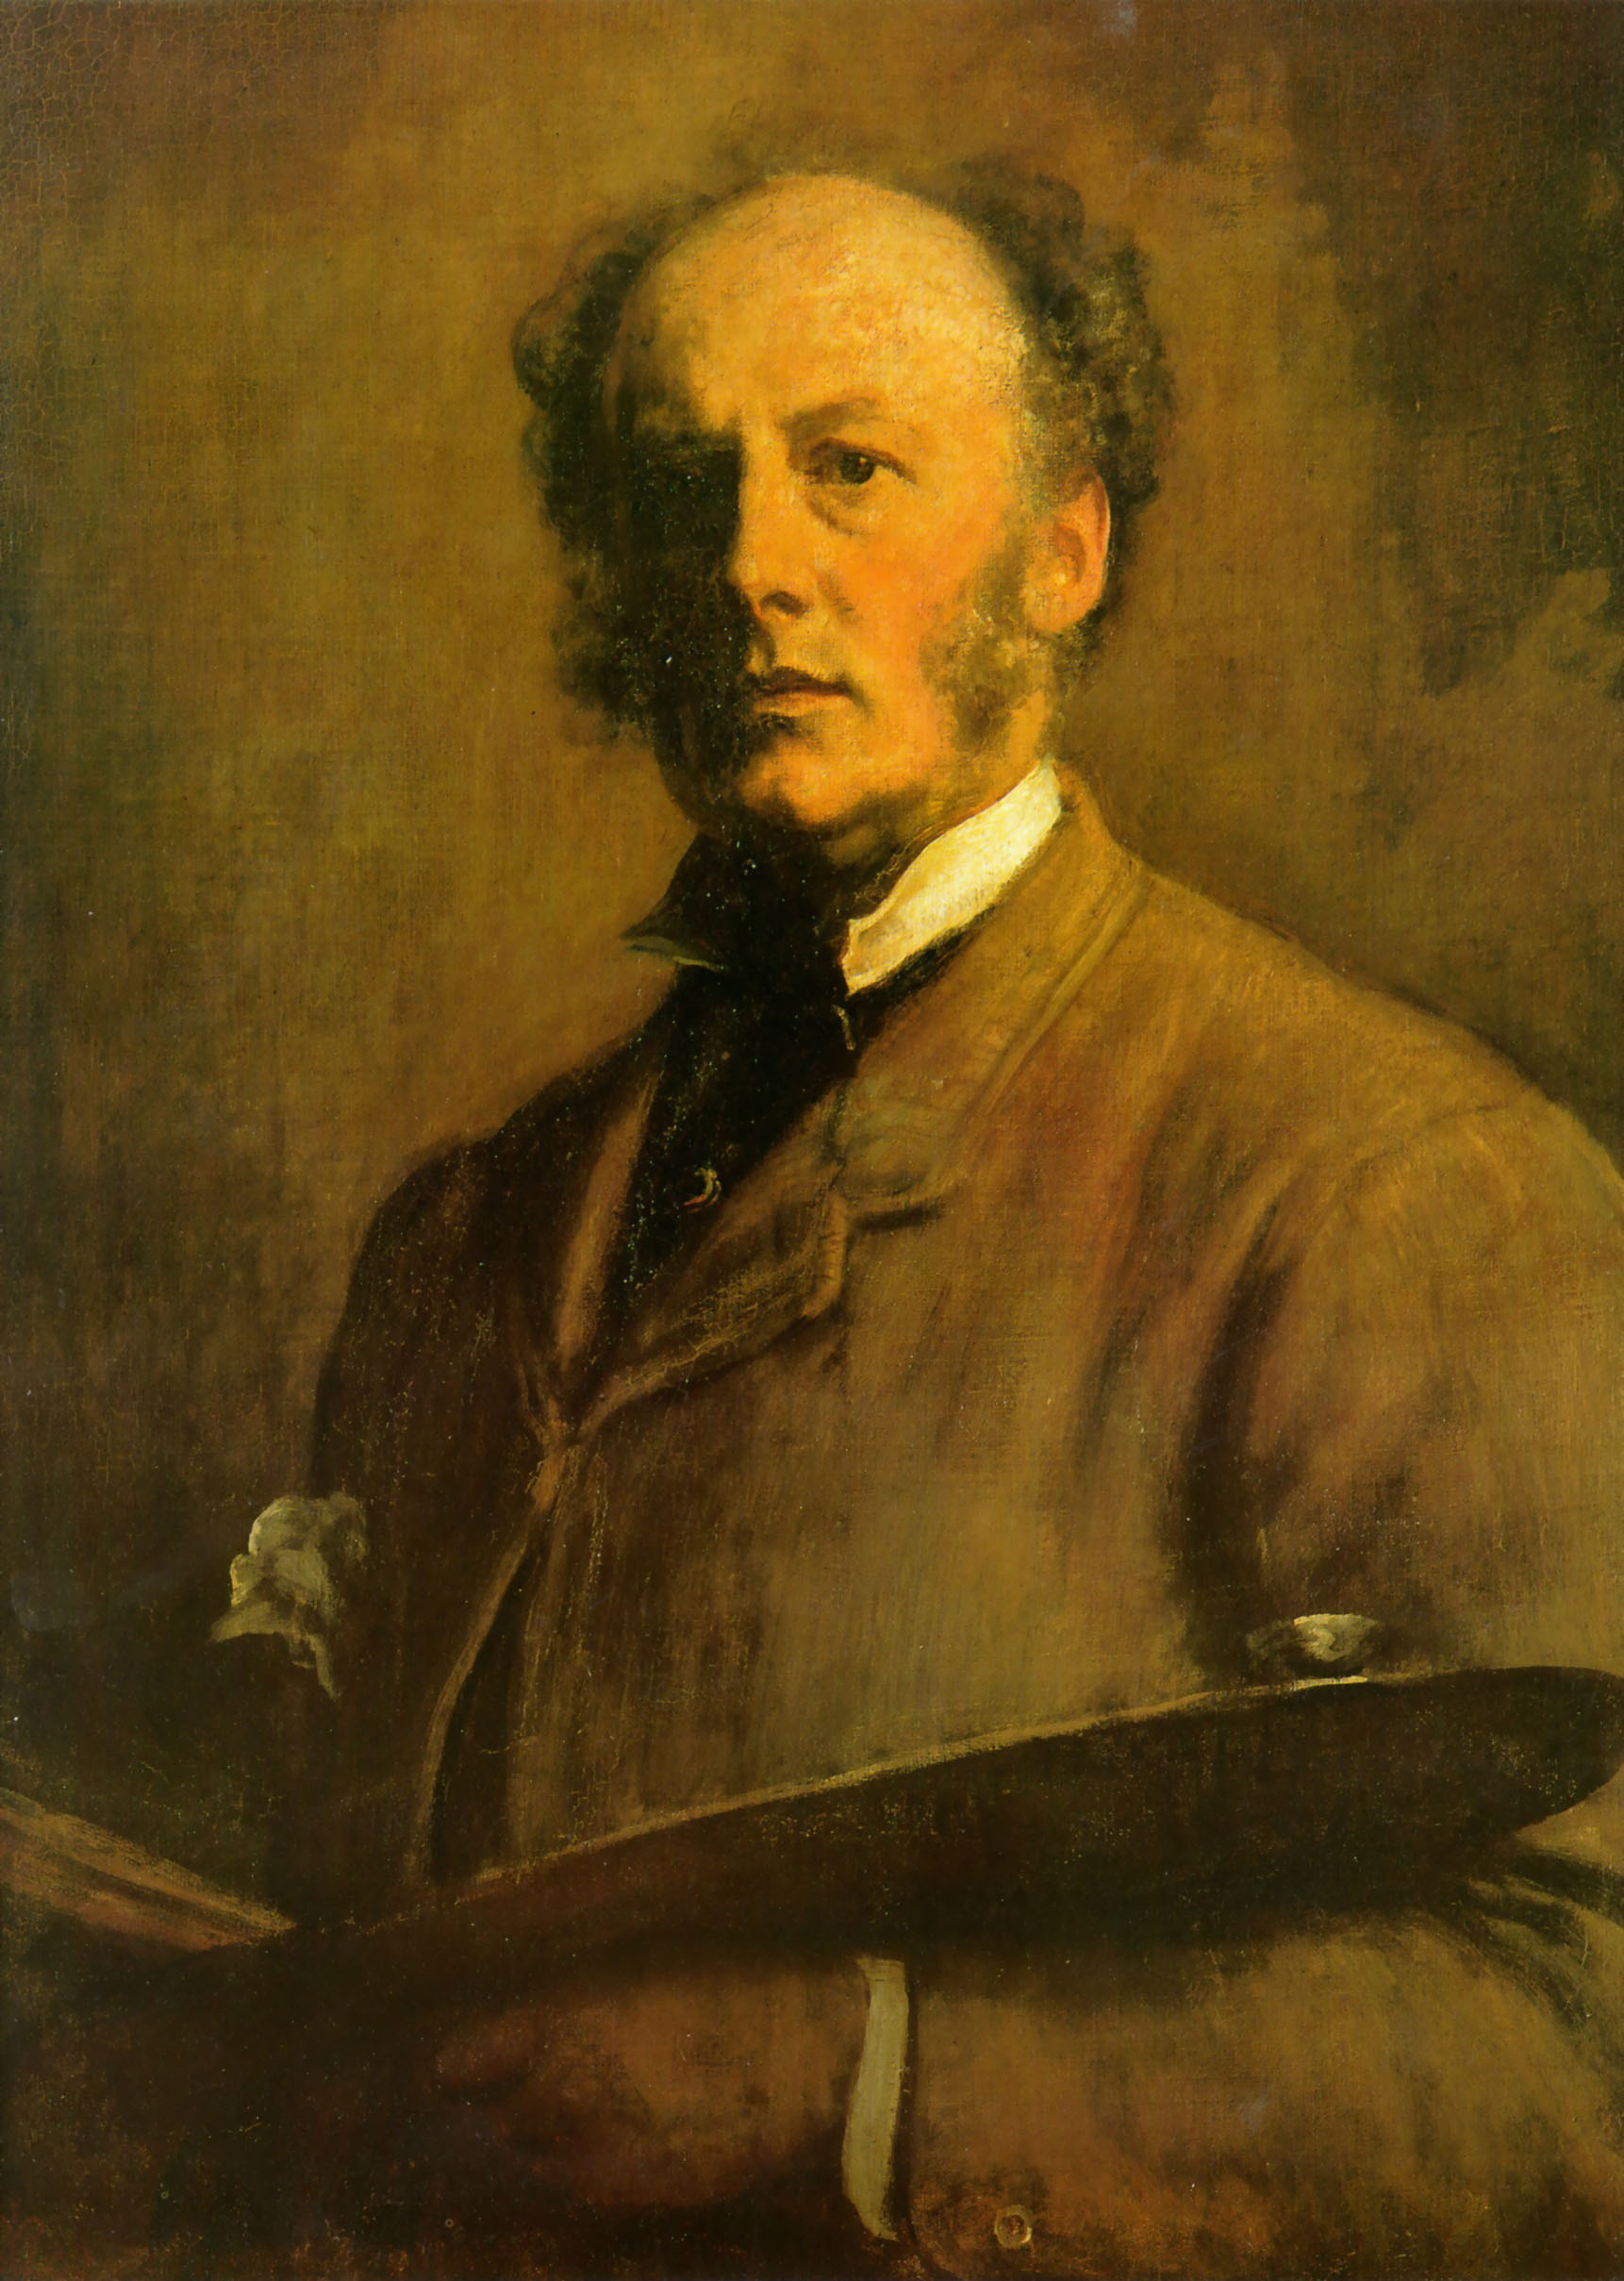 John Everett Millais - 8. Juni 1829 - 13. August 13 1896